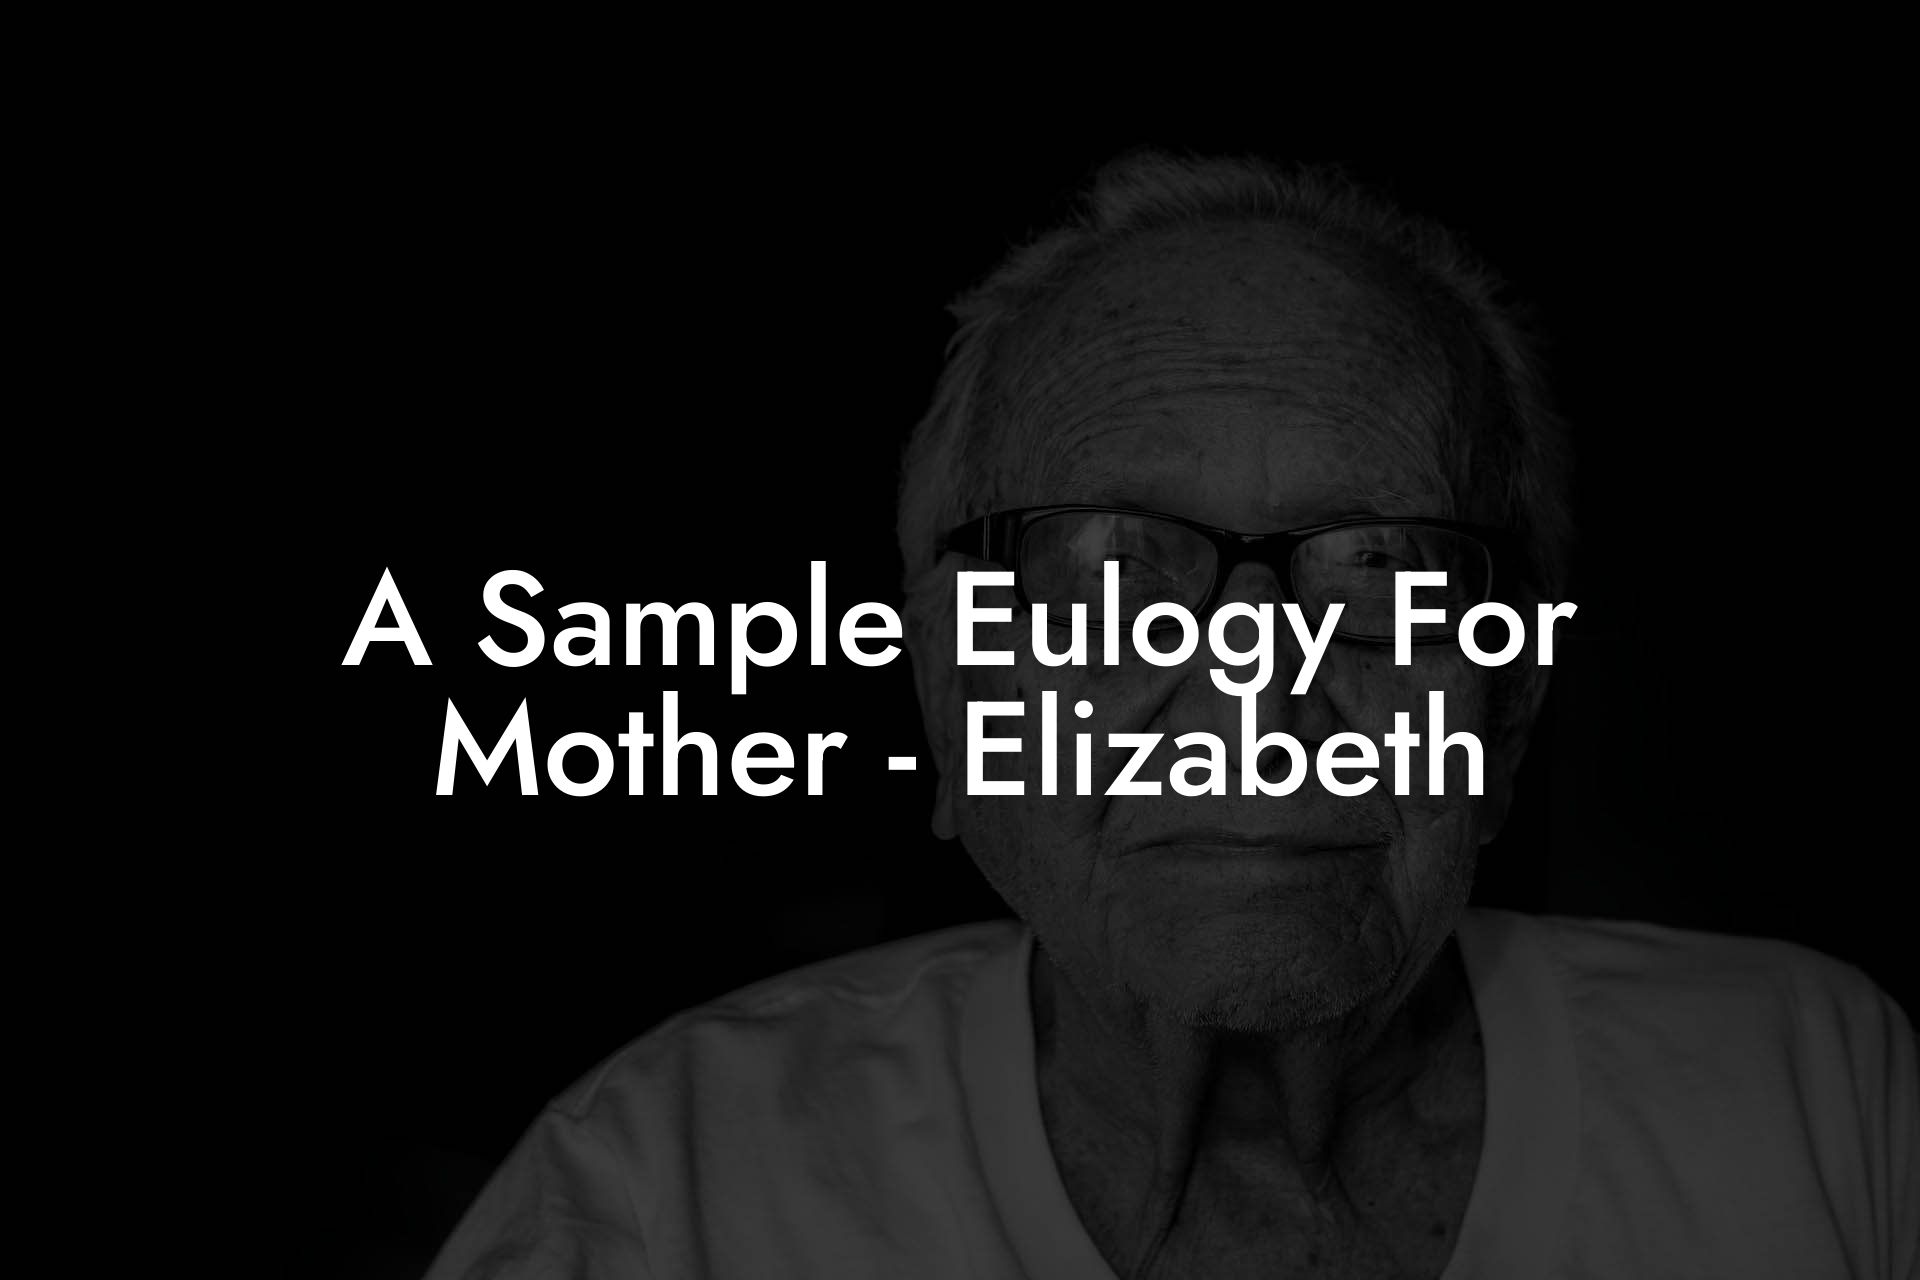 A Sample Eulogy For Mother - Elizabeth